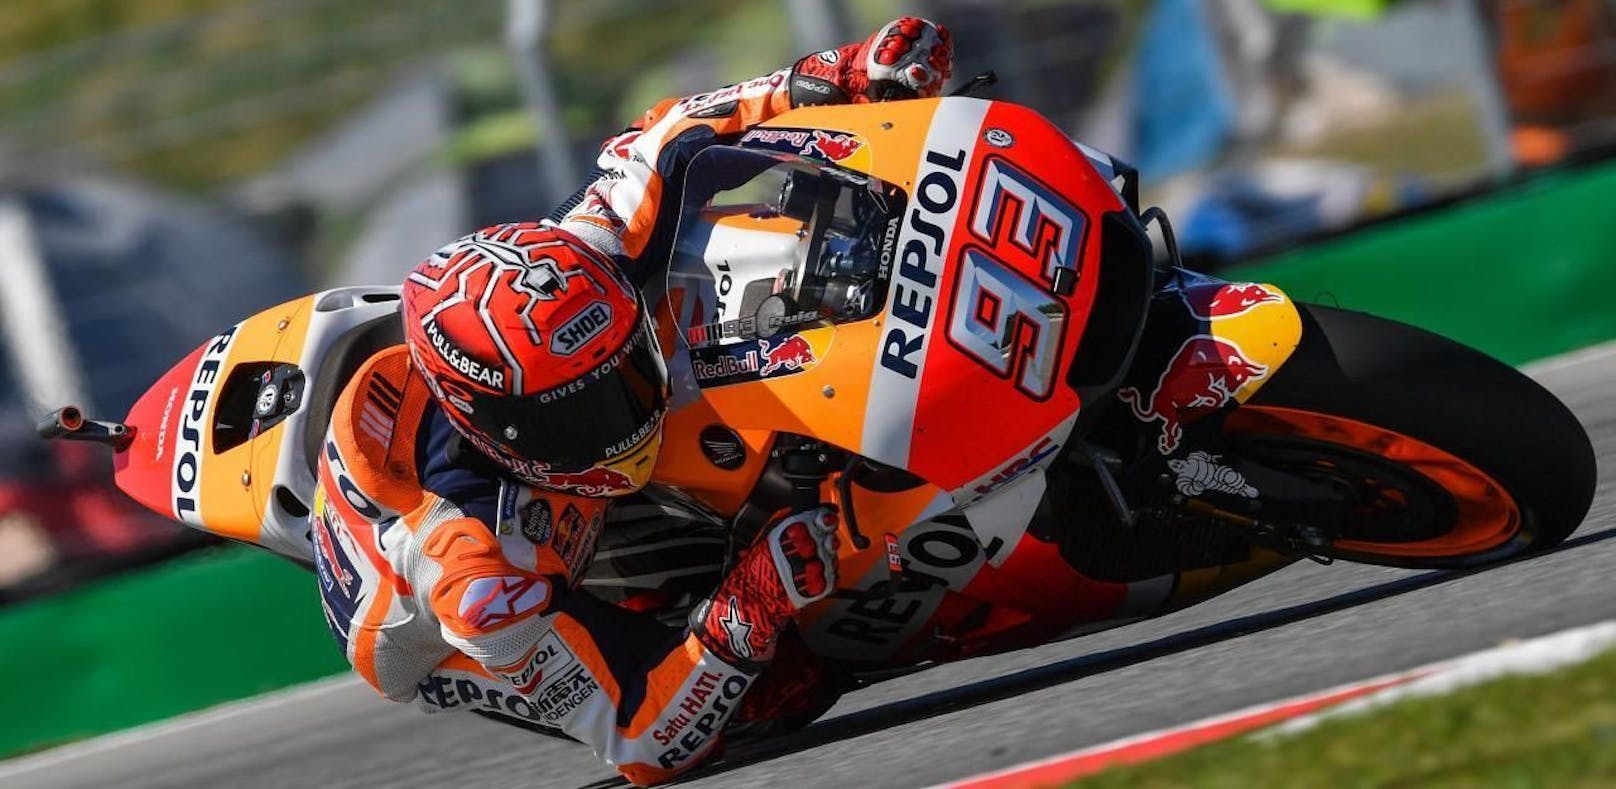 MotoGP: Marquez feiert souveränen Sieg in Brünn